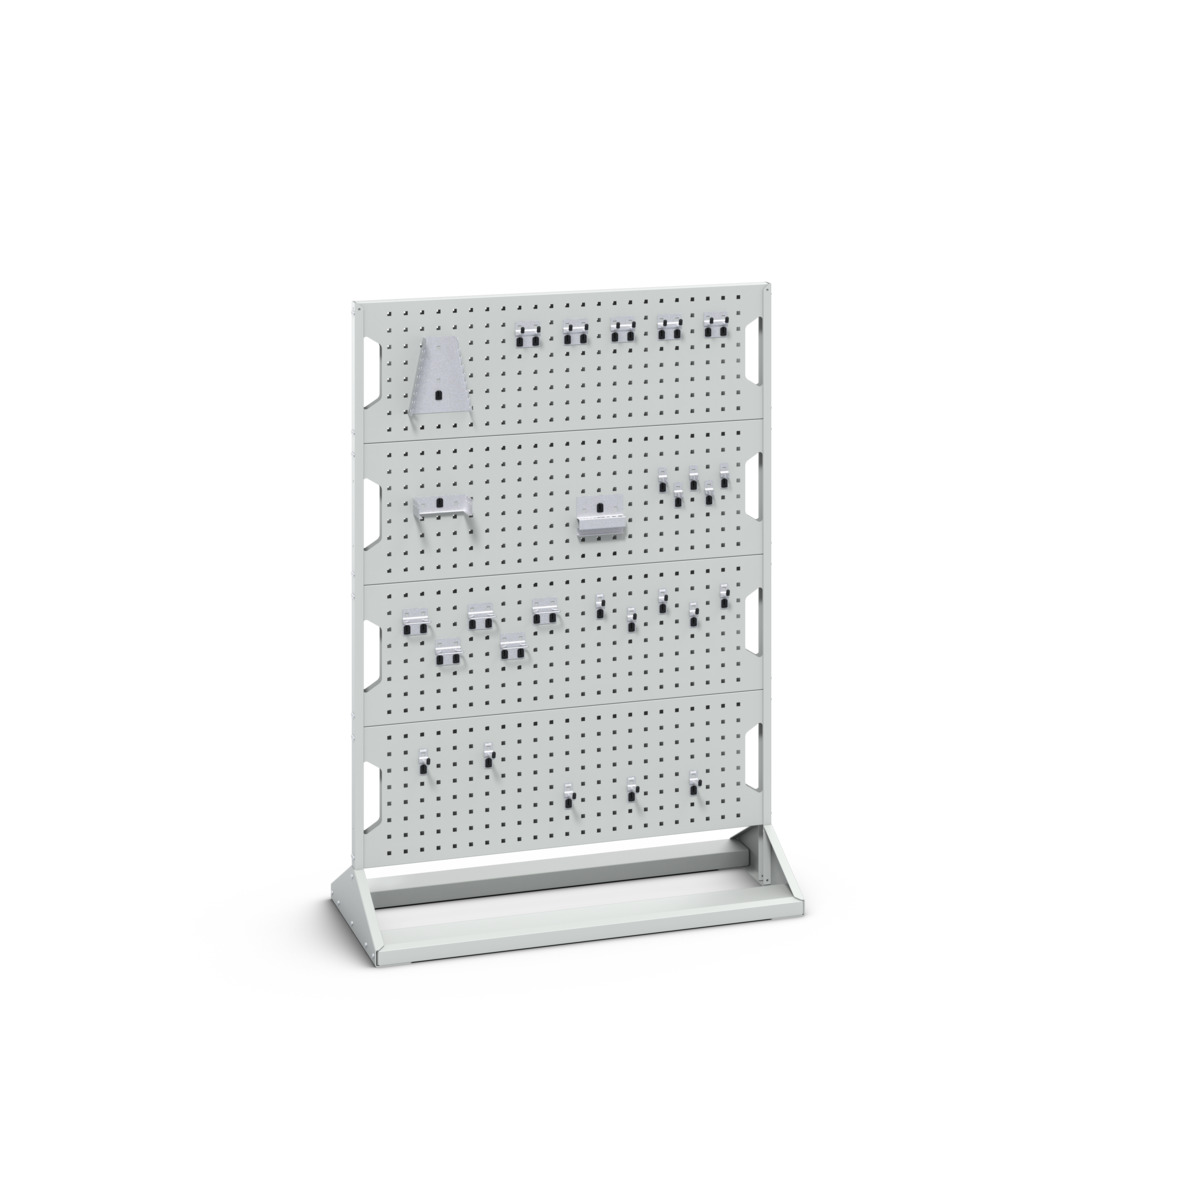 16917201.16V - perfo panel rack double sided & hook kit